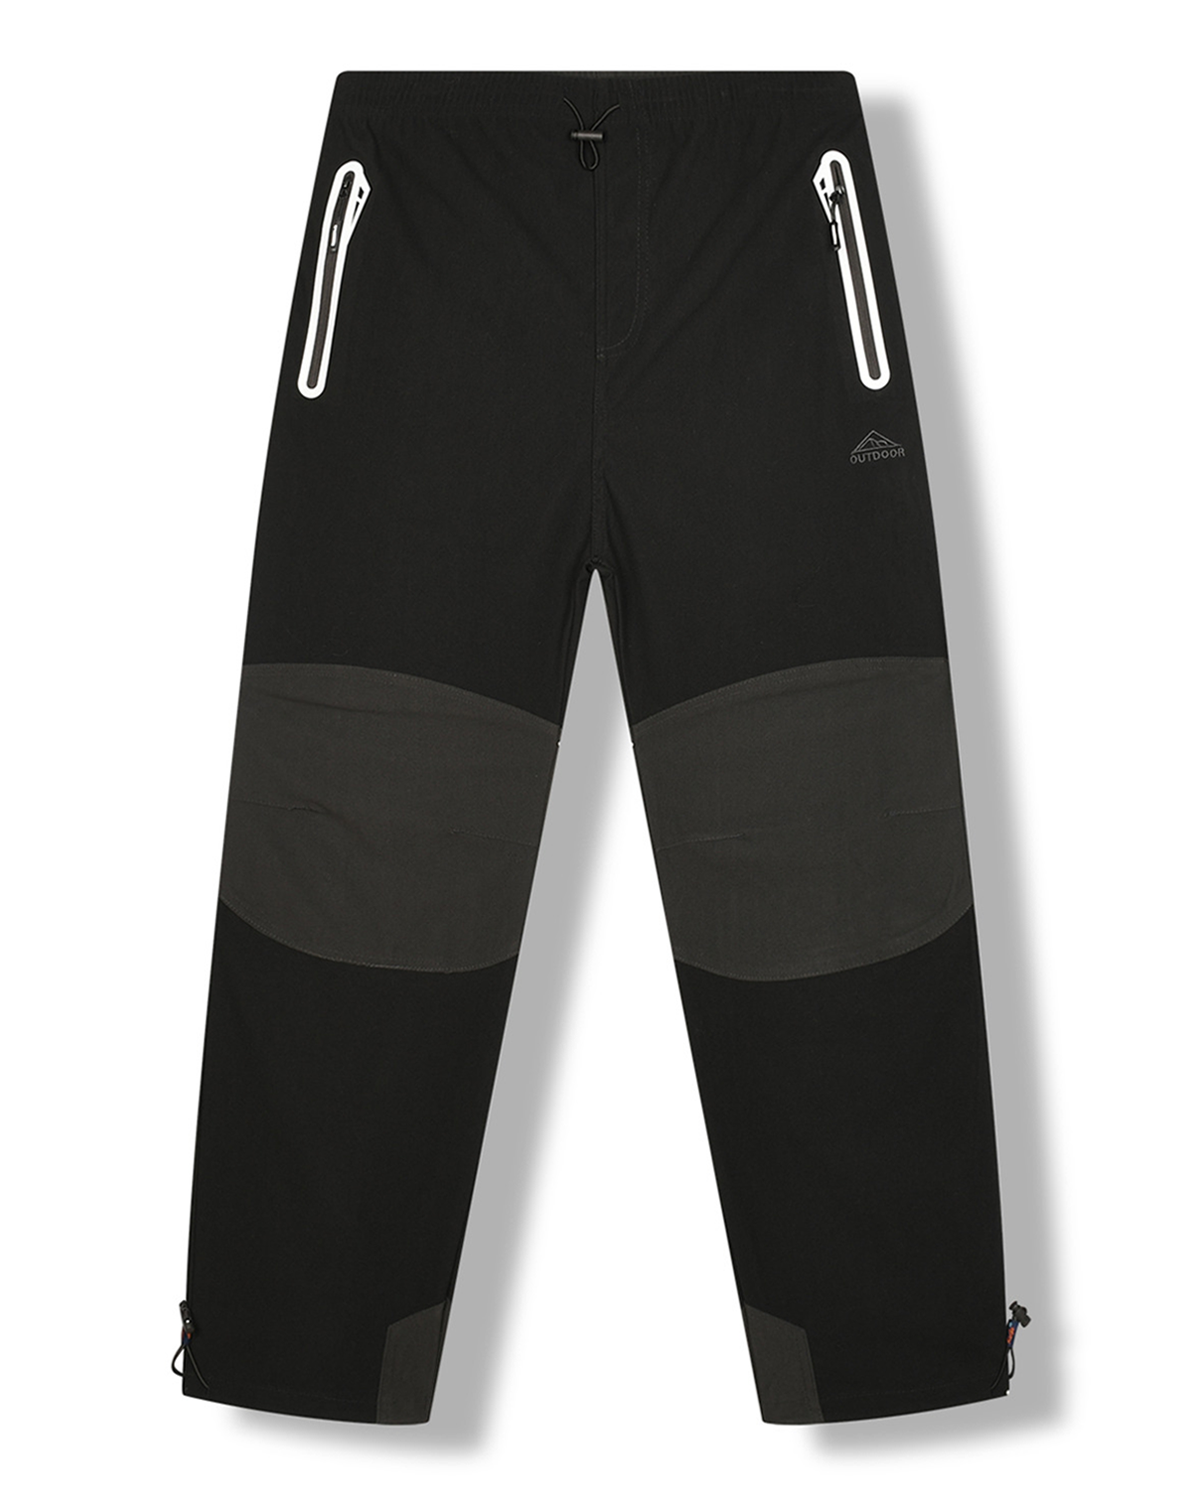 Pánské outdoorové kalhoty - KUGO G8553, černá Barva: Černá, Velikost: L